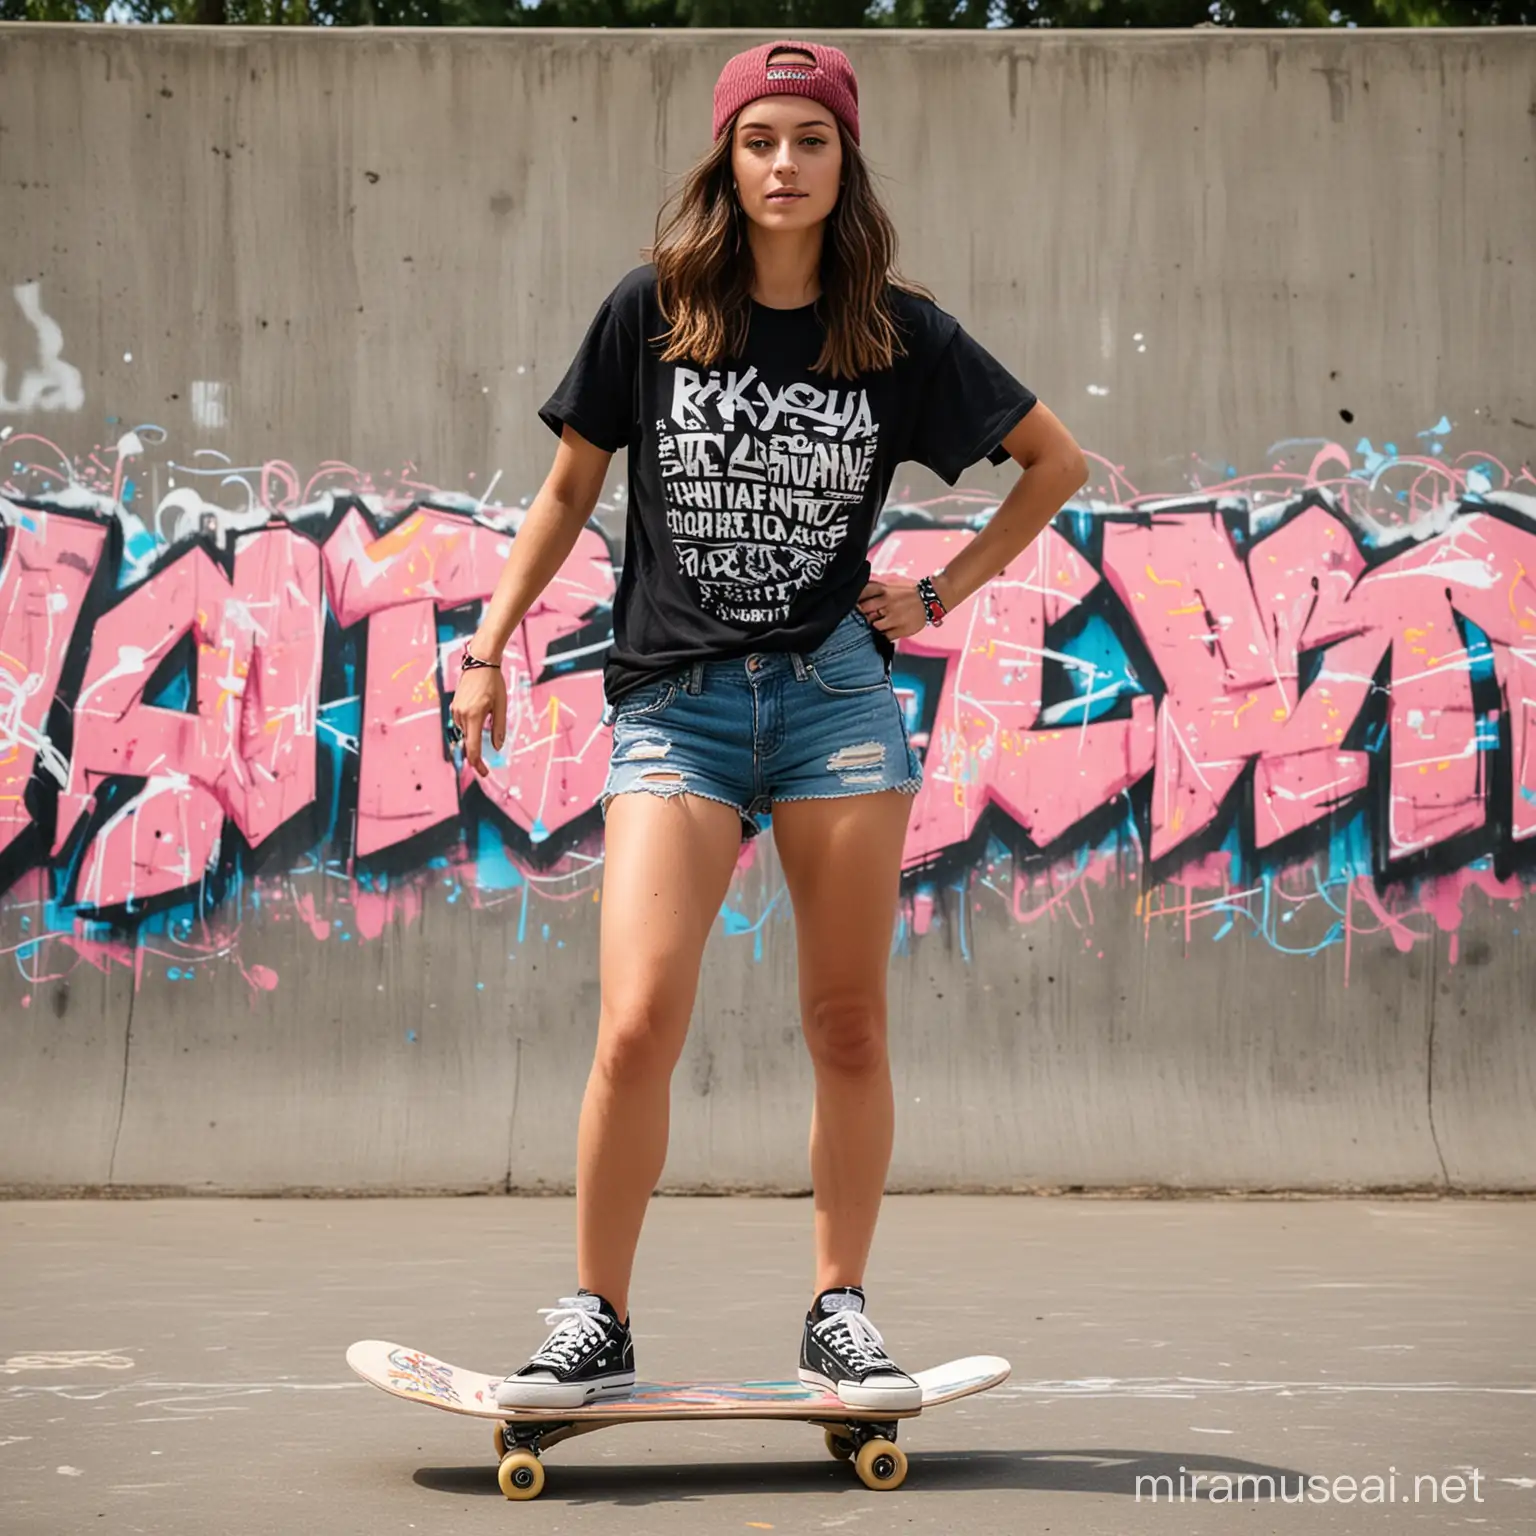 Skateboarding Practice in Vibrant Graffiti Skate Park